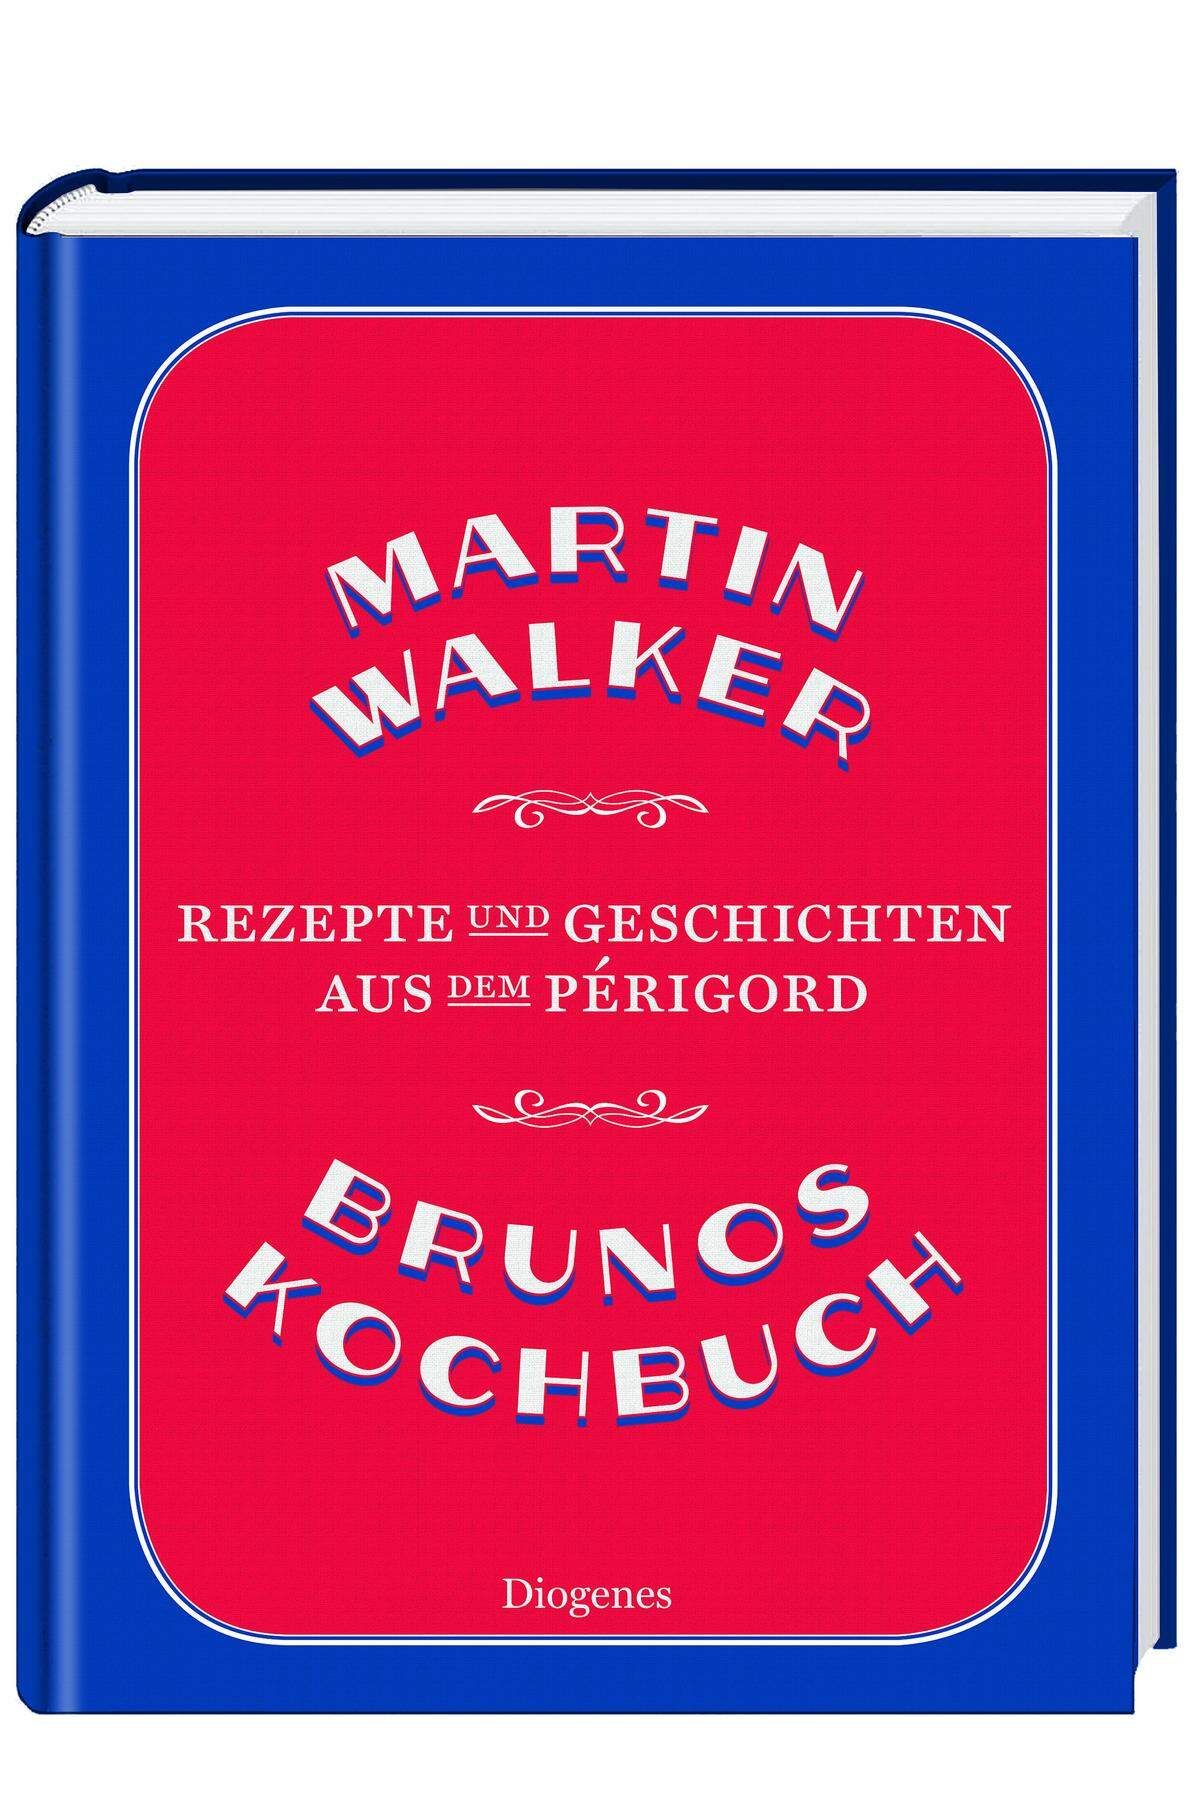 ... von Martin Walker, 320 Seiten um 29,80 Euro